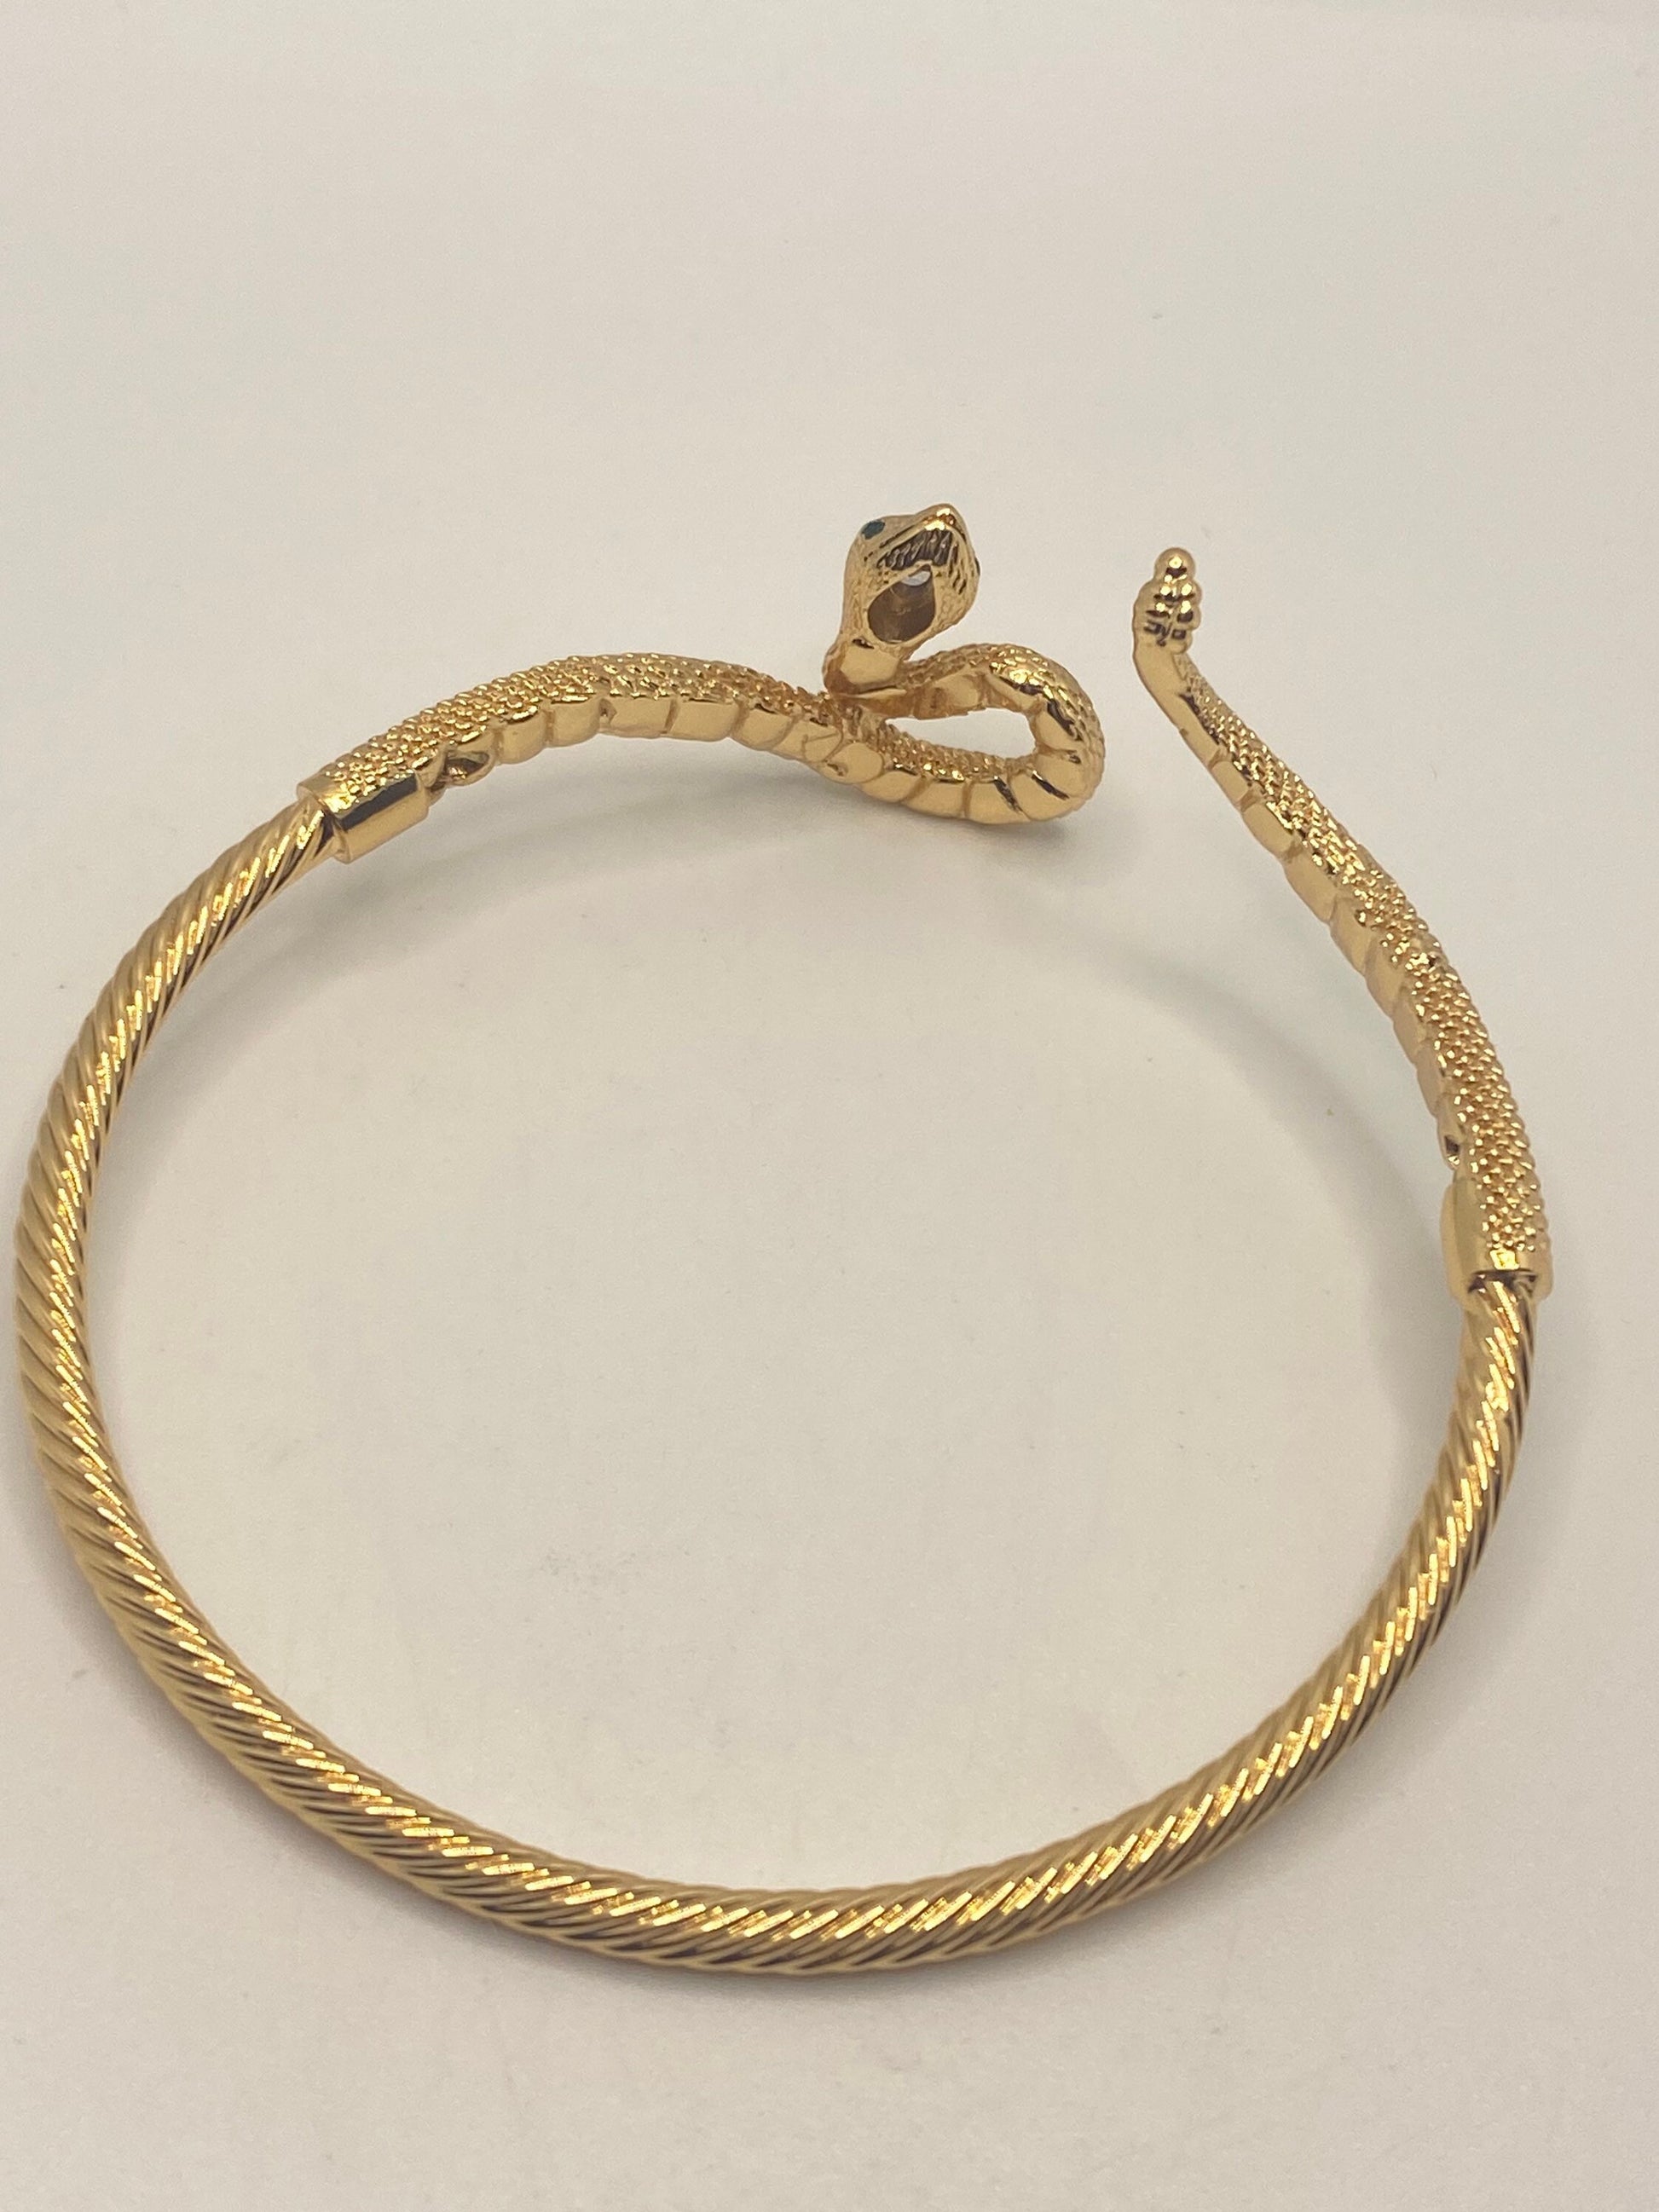 Vintage Snake Bangle Bracelet Gold Filled Green Crystal Eyes